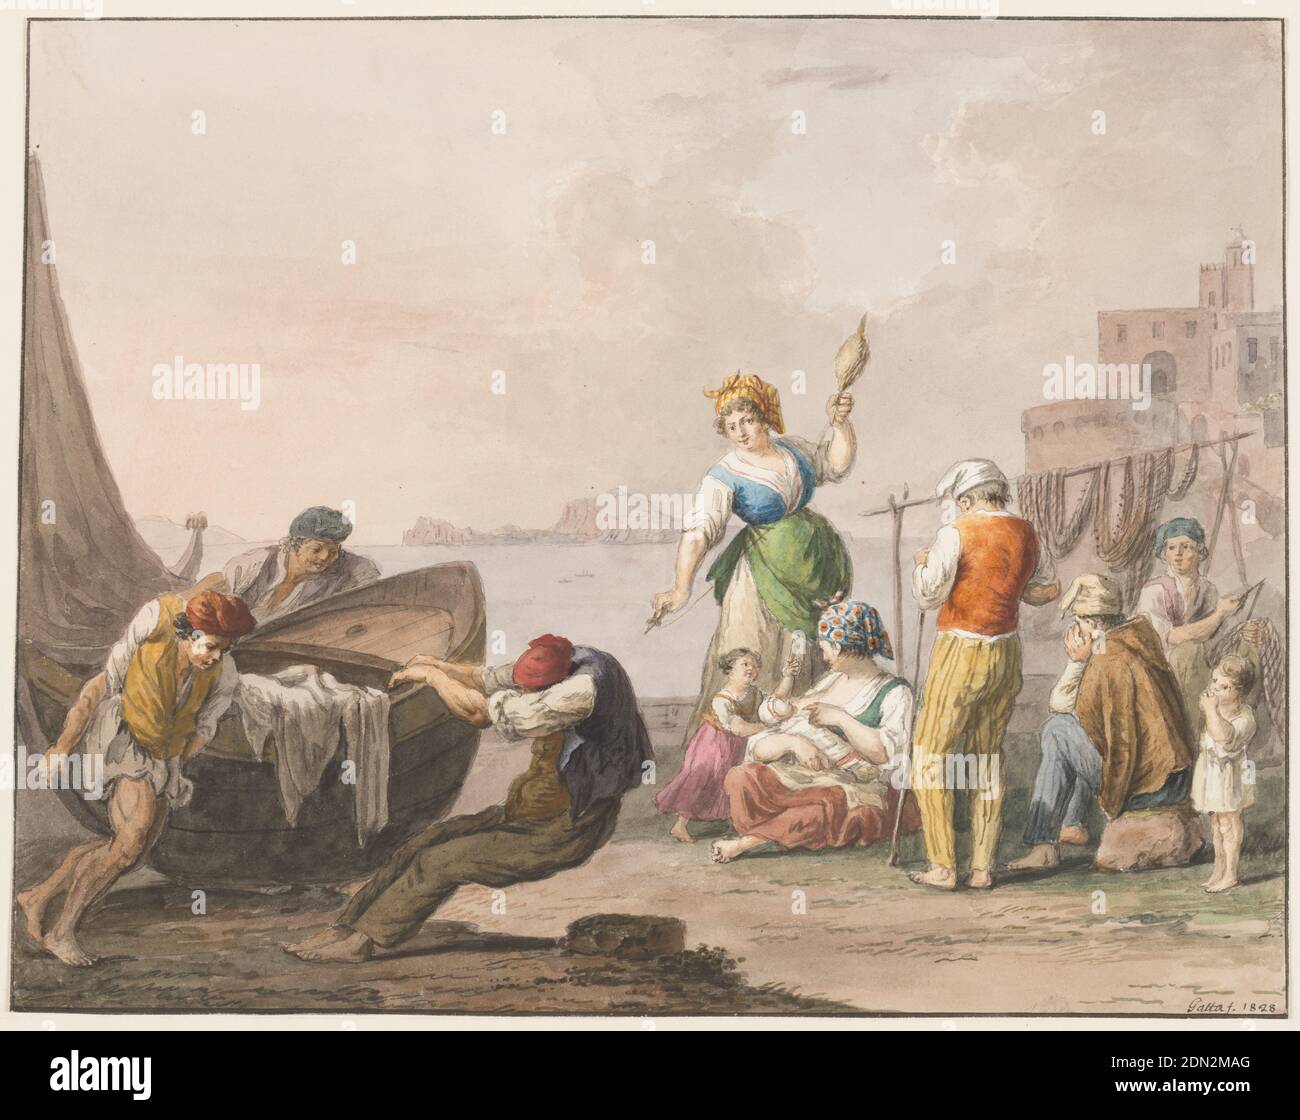 Couleur de l'eau; sur la rive à Chiaja, Saverio della Gatta, italien, 1777 - 1829, craie noire et diverses couleurs de l'eau sur papier., rectangle horizontal. Trois hommes déplacent un bateau allongé sur la rive, à gauche. À droite se trouvent une femme debout et une femme qui tourne, une femme assise qui allaite un bébé avec une fille debout à côté d'elle, trois hommes et un enfant qui mange. A gauche est un rocher, à droite est un promontoire avec structure, en arrière-plan sont Capri et la péninsule de Sorrente. Ligne de cadrage. La signature est dans le coin inférieur droit: 'Gatta F. 1828.', Italie, 1828, figures, dessin Banque D'Images